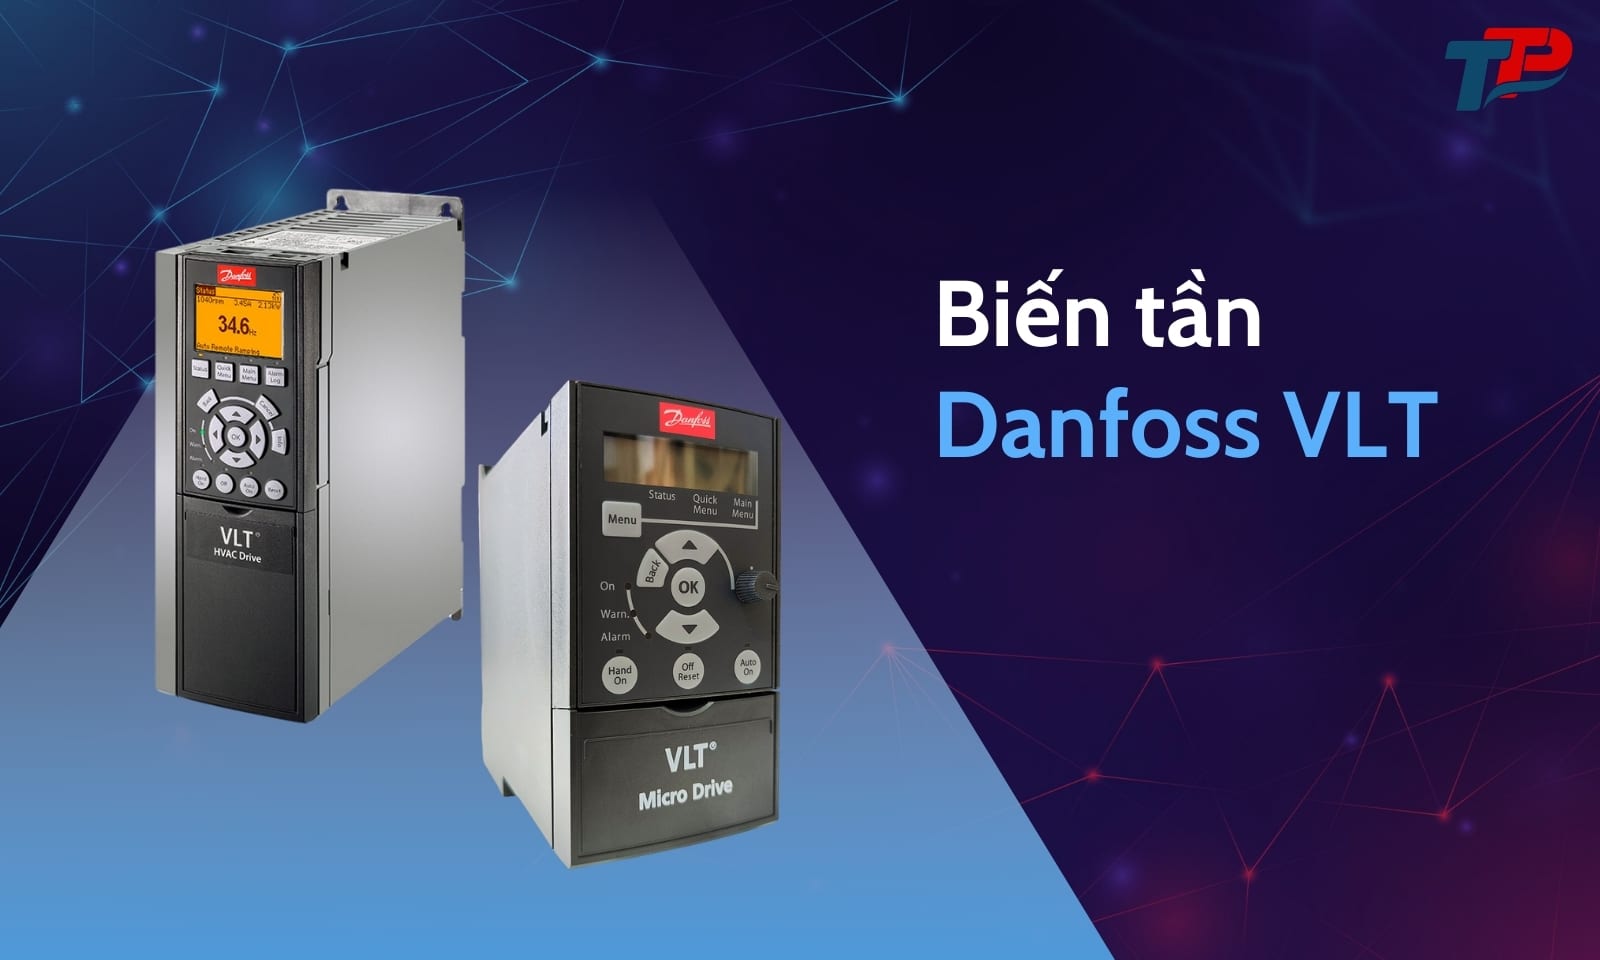 Biến tần Danfoss VLT